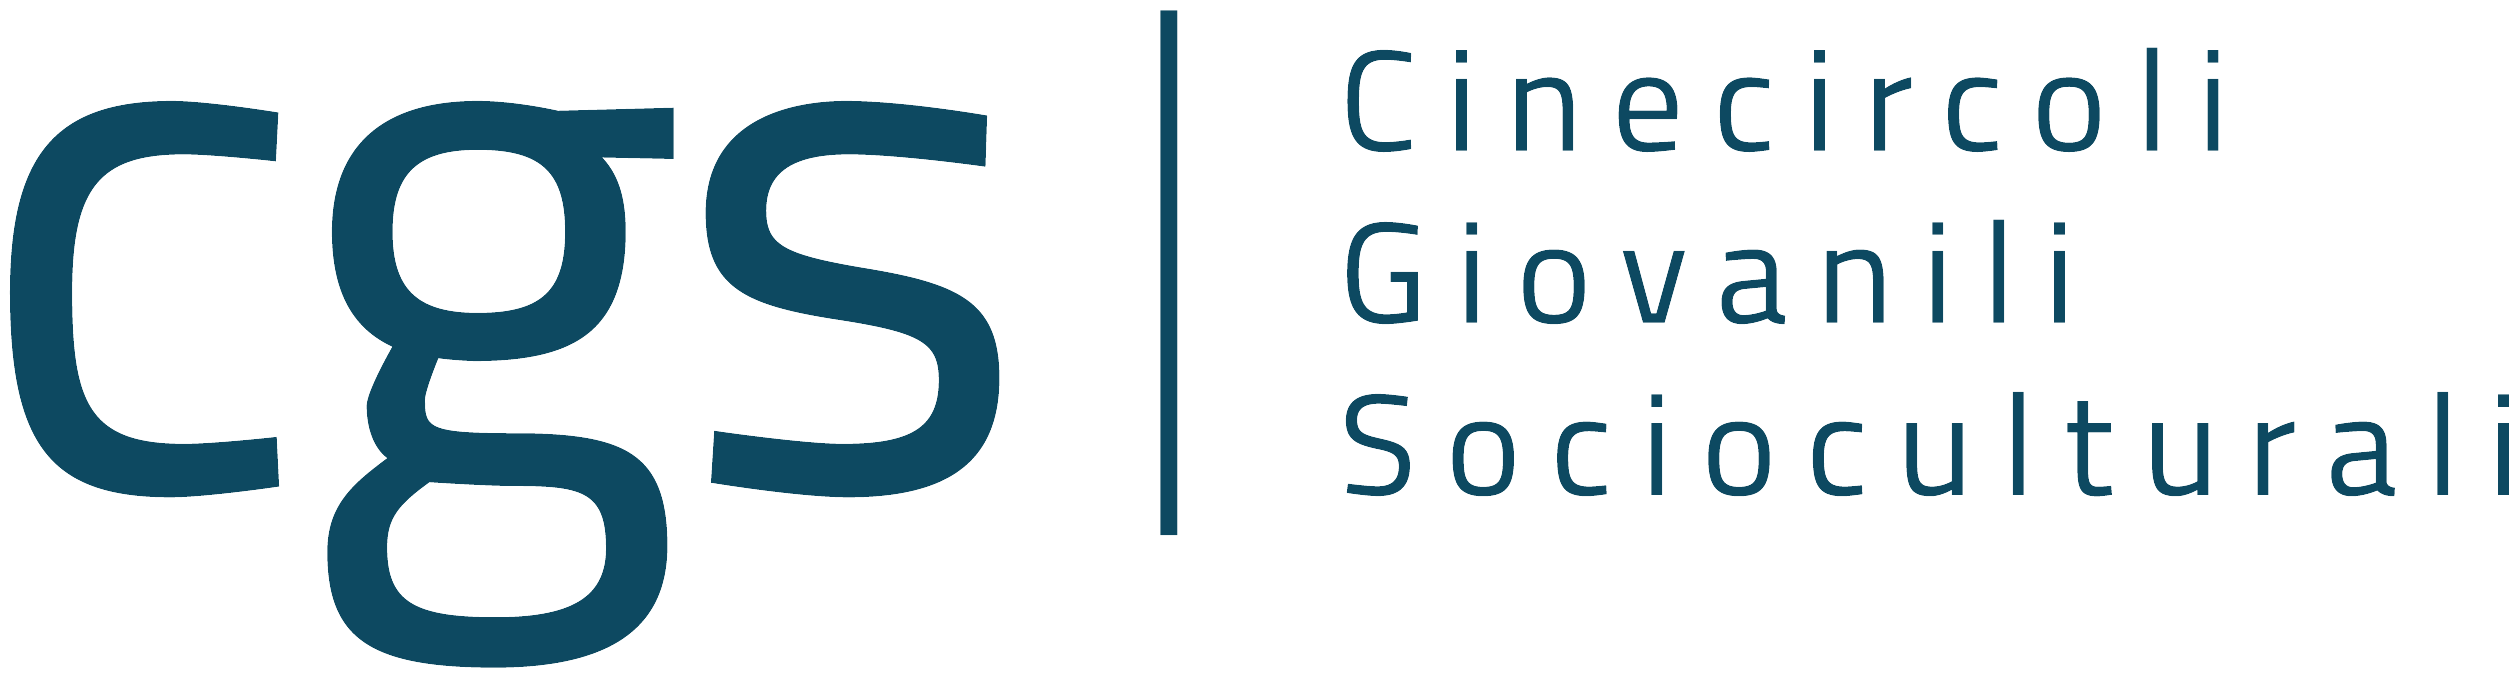 CGS - Cinecircoli Giovanili Socioculturali